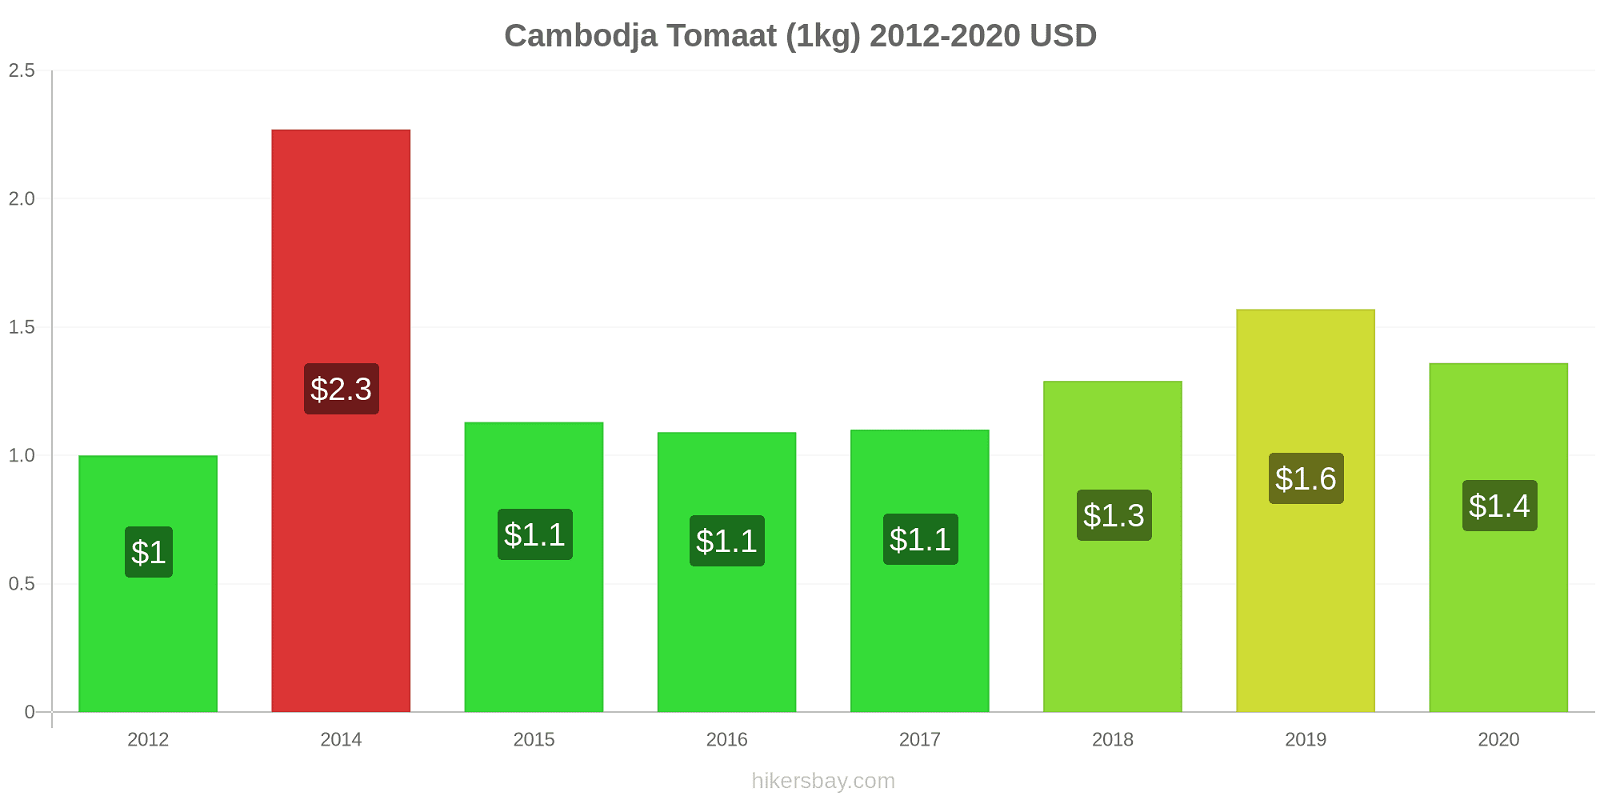 Cambodja prijswijzigingen Tomaat (1kg) hikersbay.com